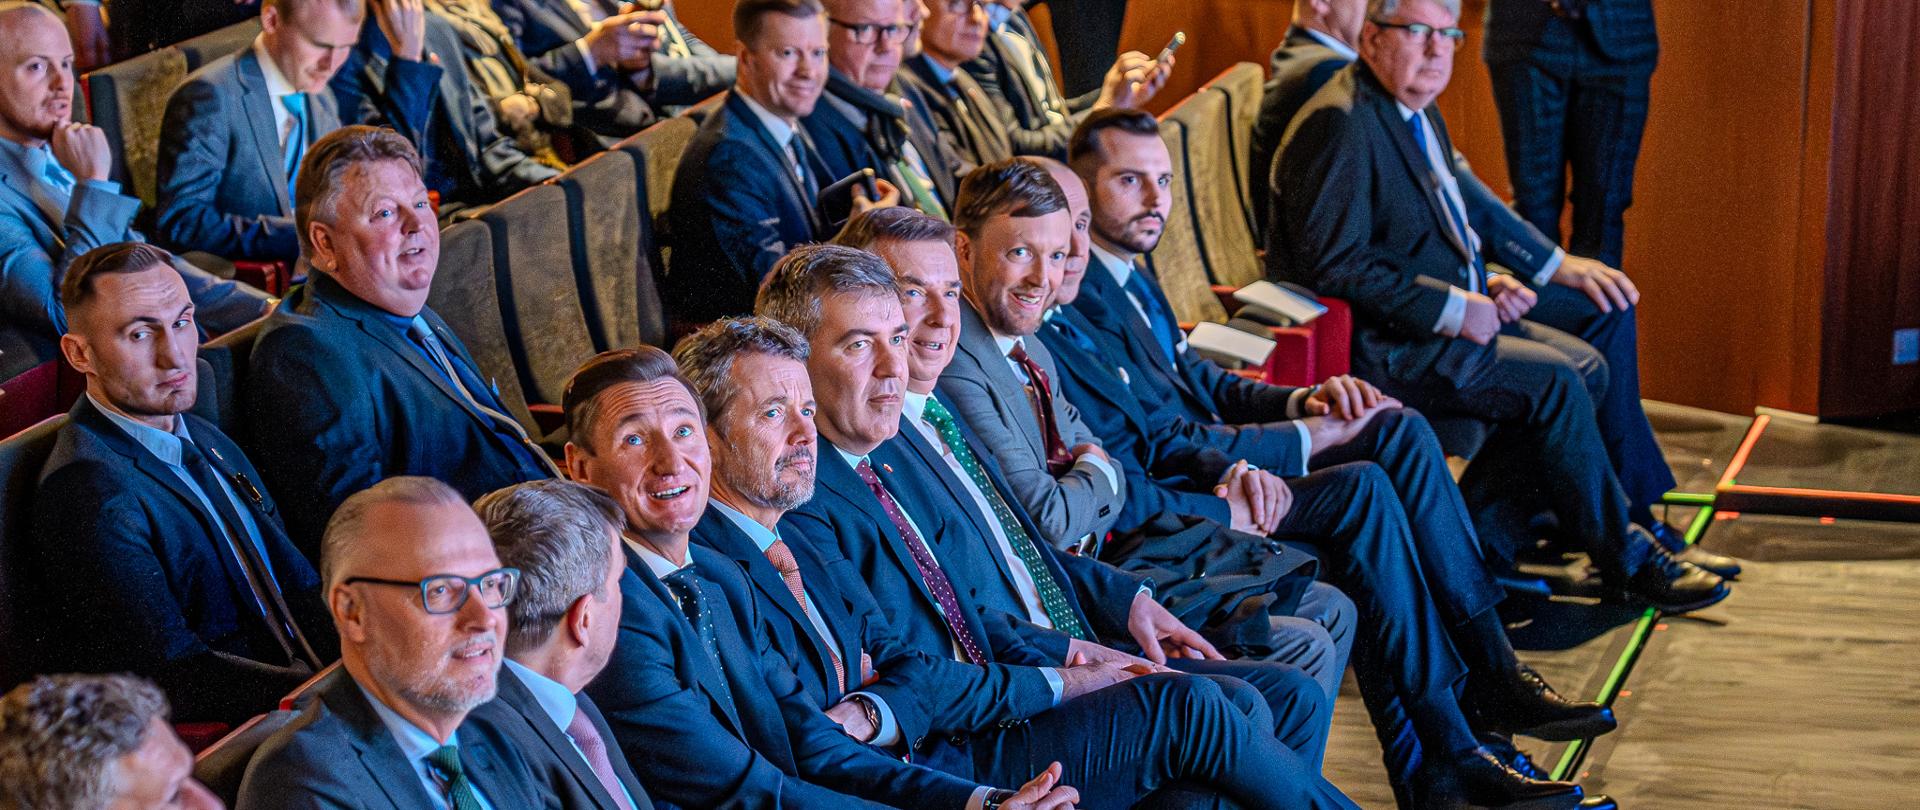 Widok z boku na salę, w rzędach krzeseł siedzą ludzie, w pierwszym rzędzie minister wieczorek, król Danii i kilku mężczyzn w garniturach.